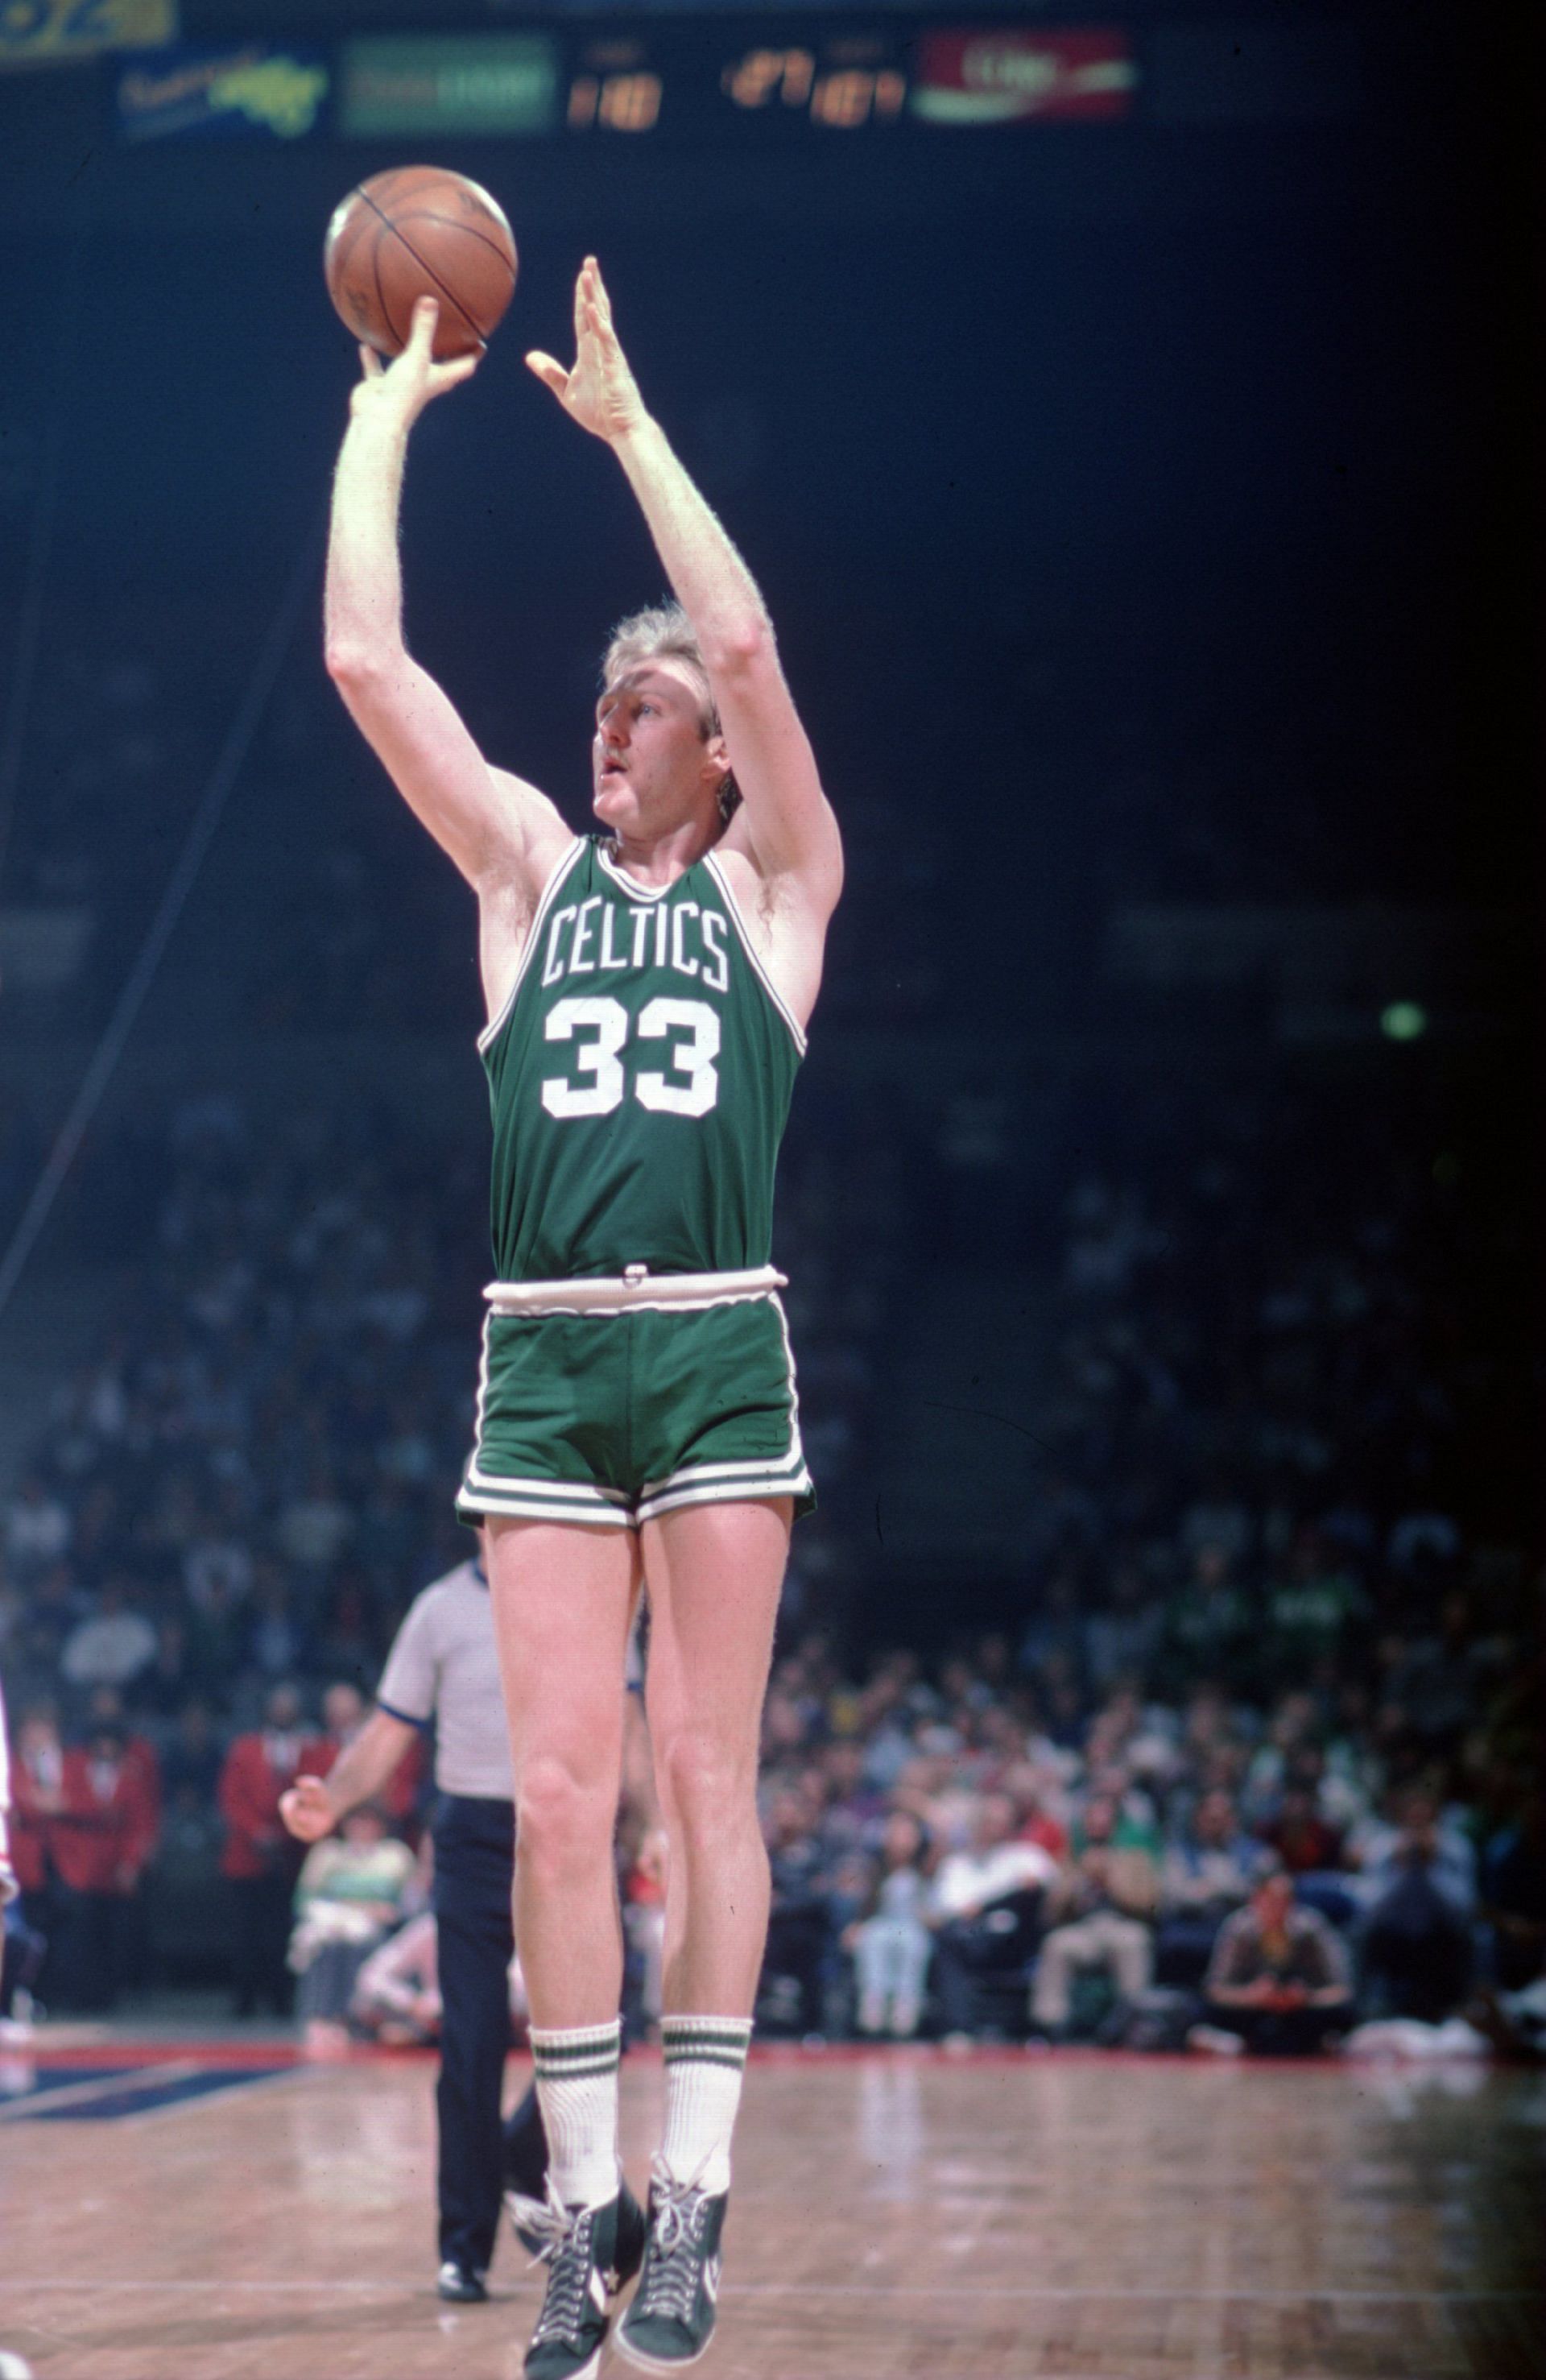 Larry Bird for the Celtics